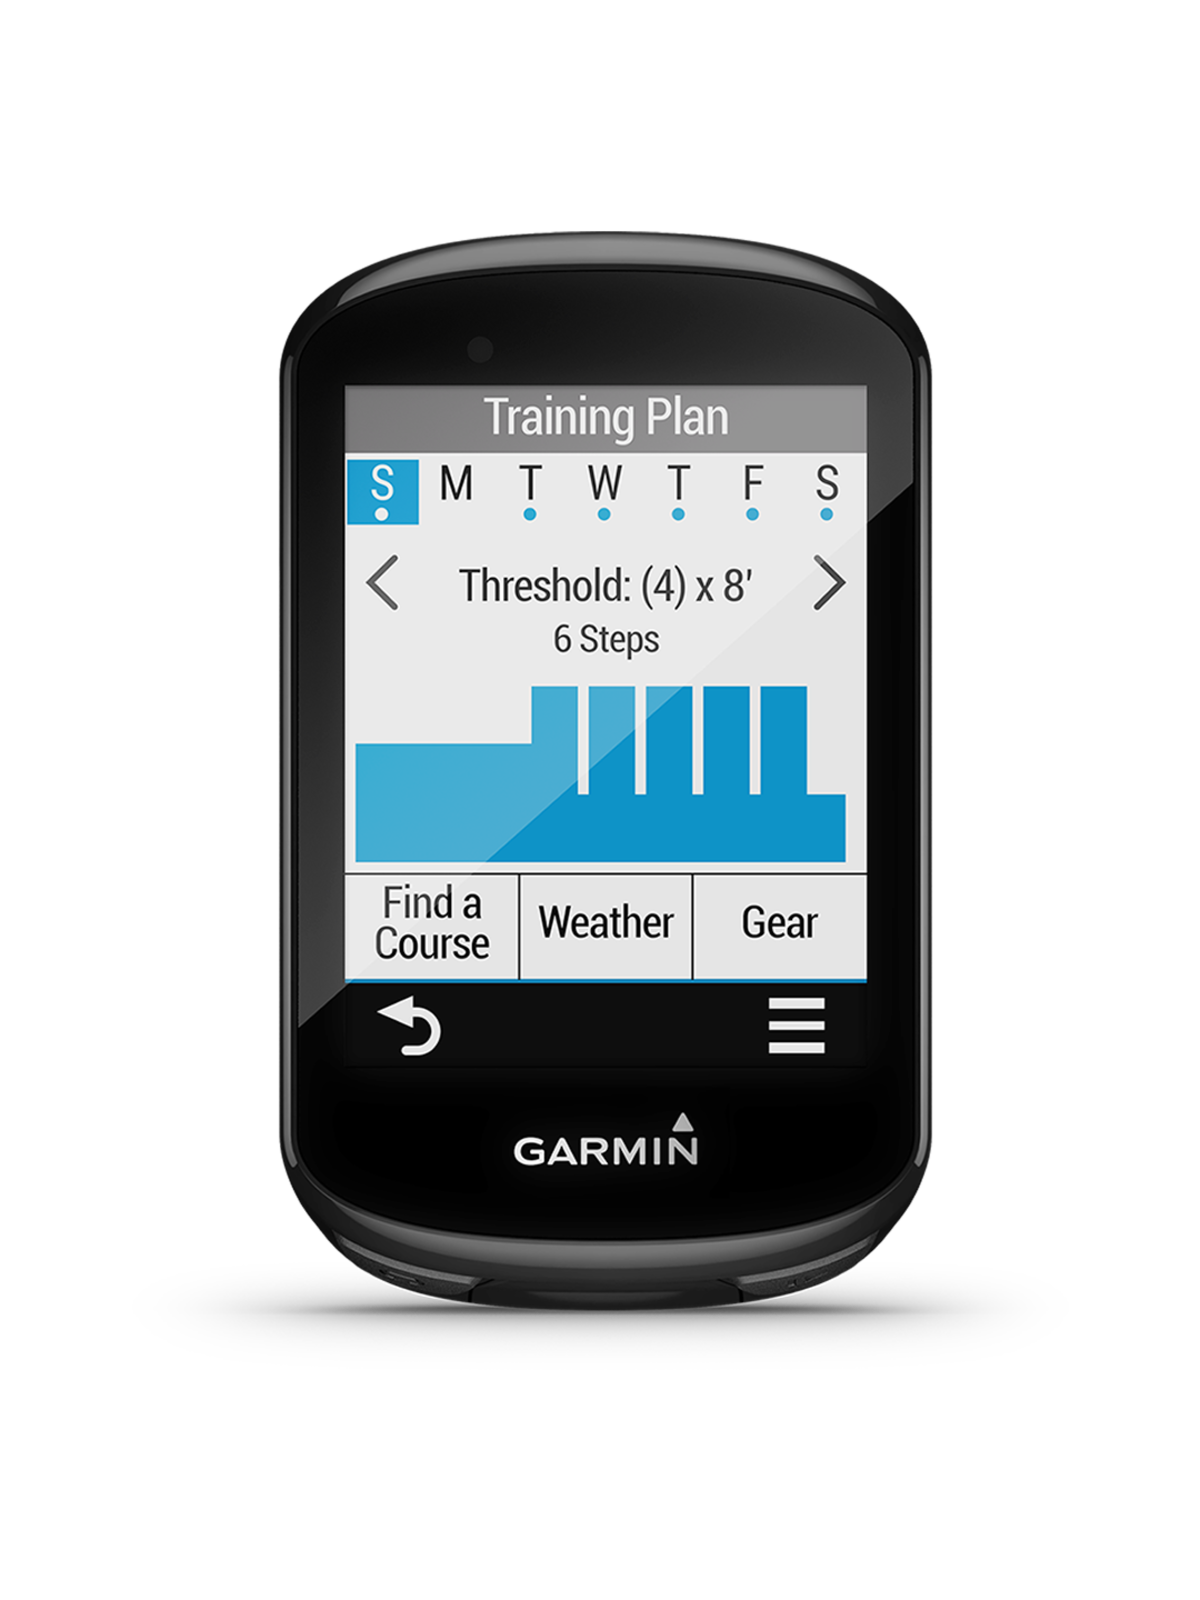 Test  GPS VTT Garmin Edge 830 : un must have ! - enDHurobike